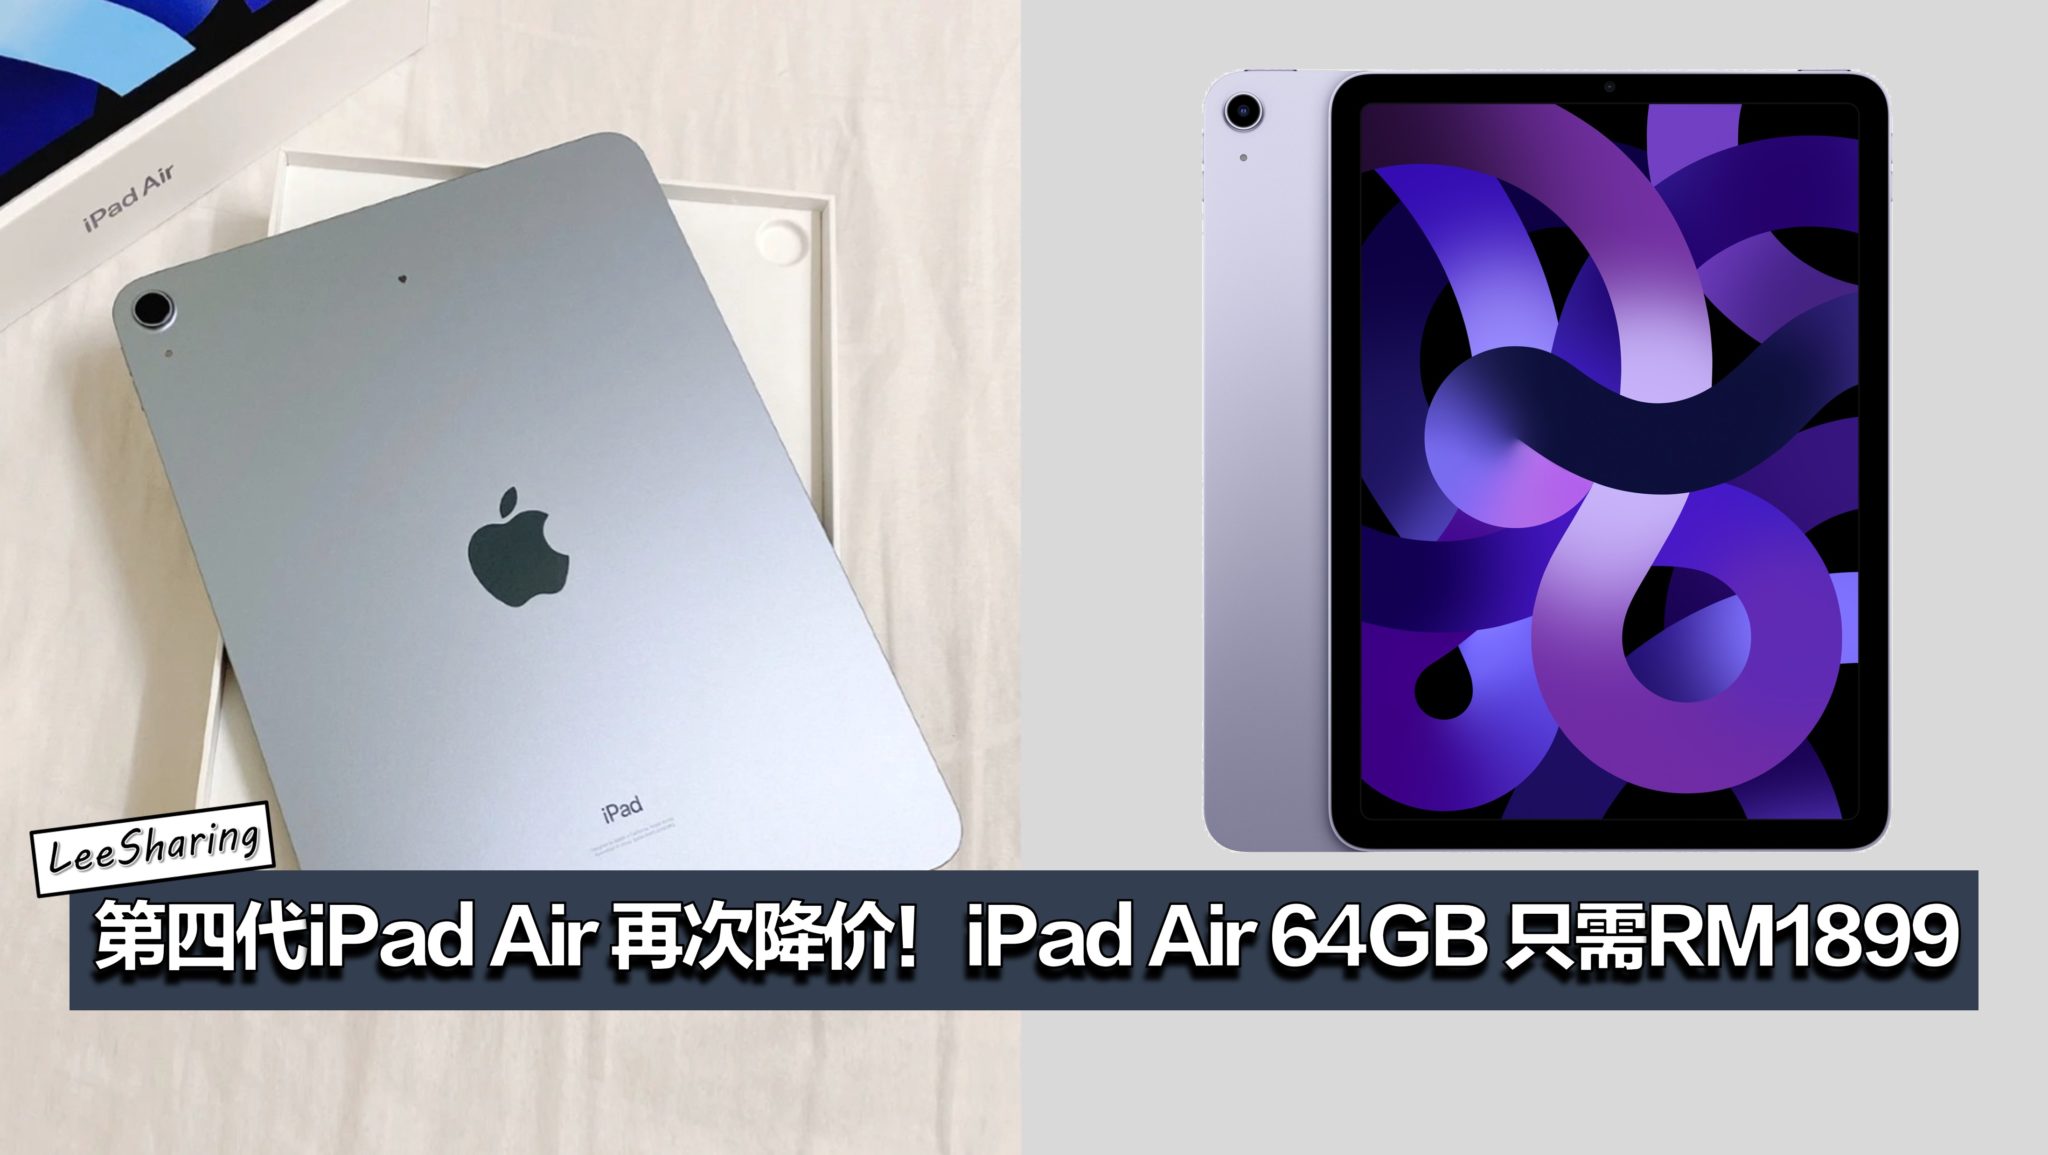 第四代iPad Air 再次降价！iPad Air 64GB 只需RM1899！ – LEESHARING